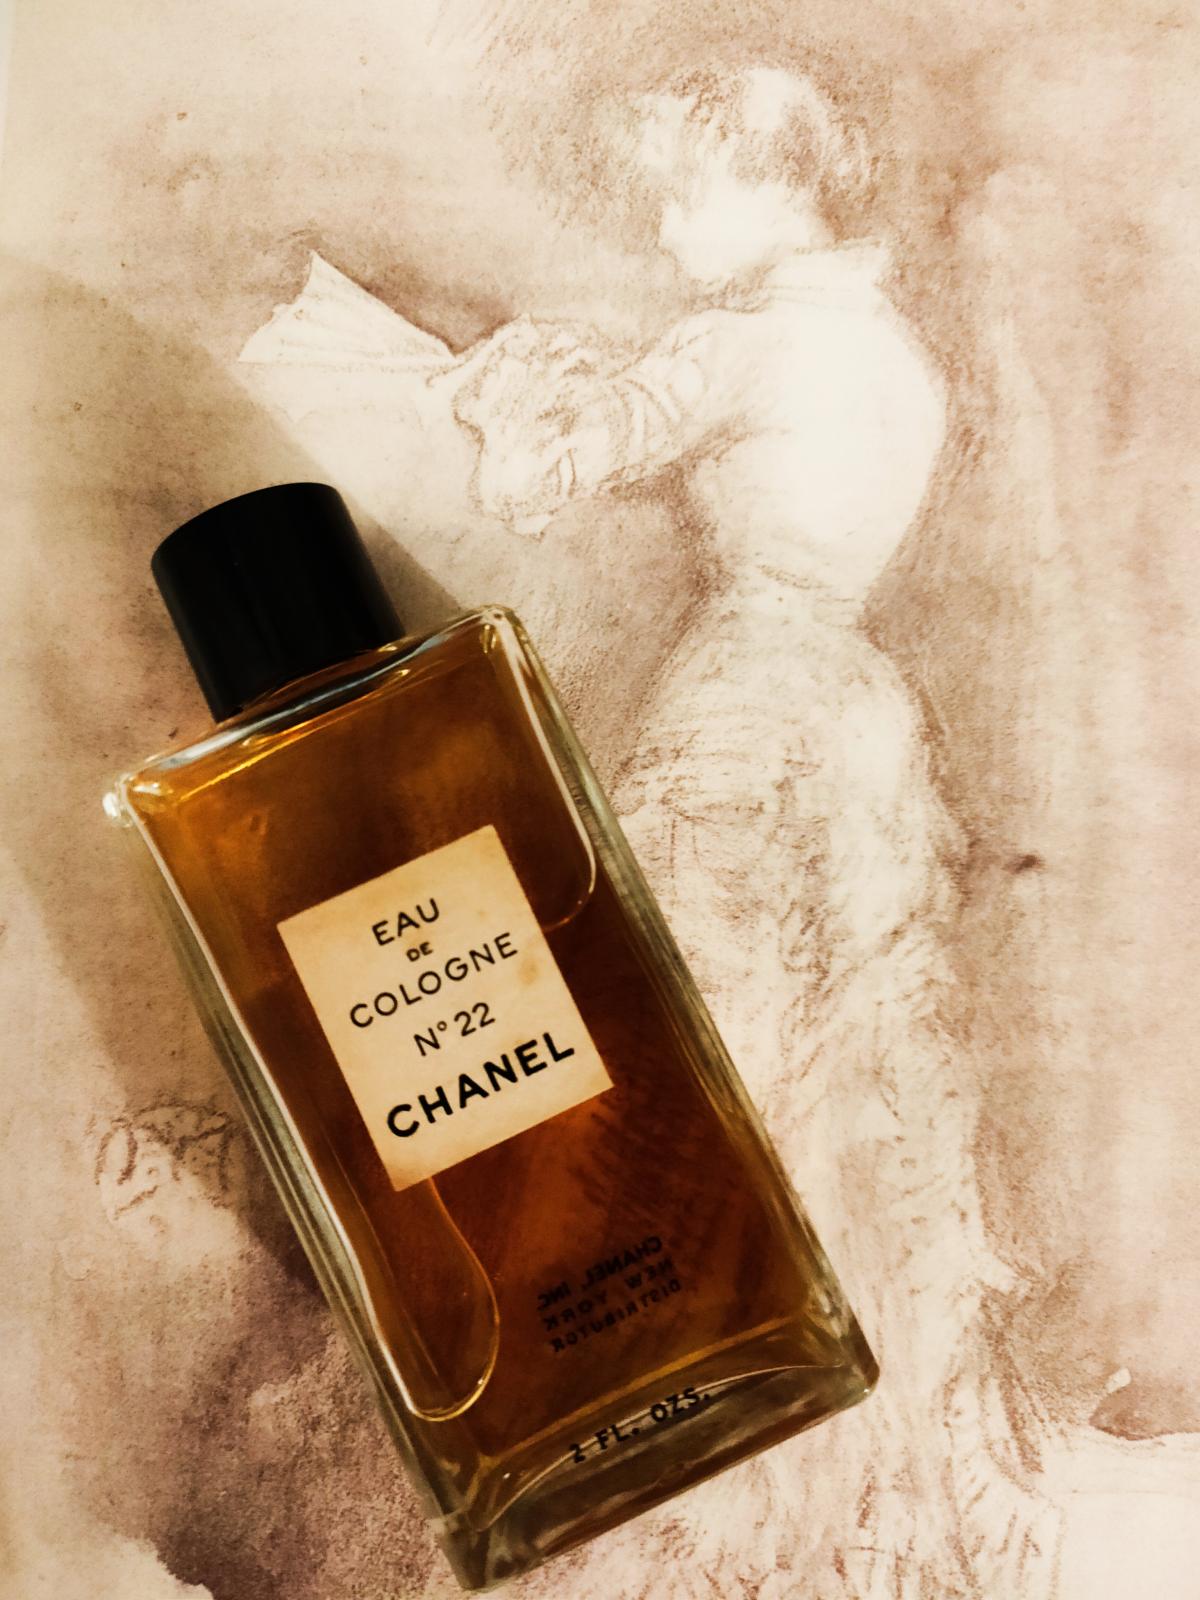 Les Exclusifs de Chanel Chanel No 22 Chanel parfem - parfem za žene 1922